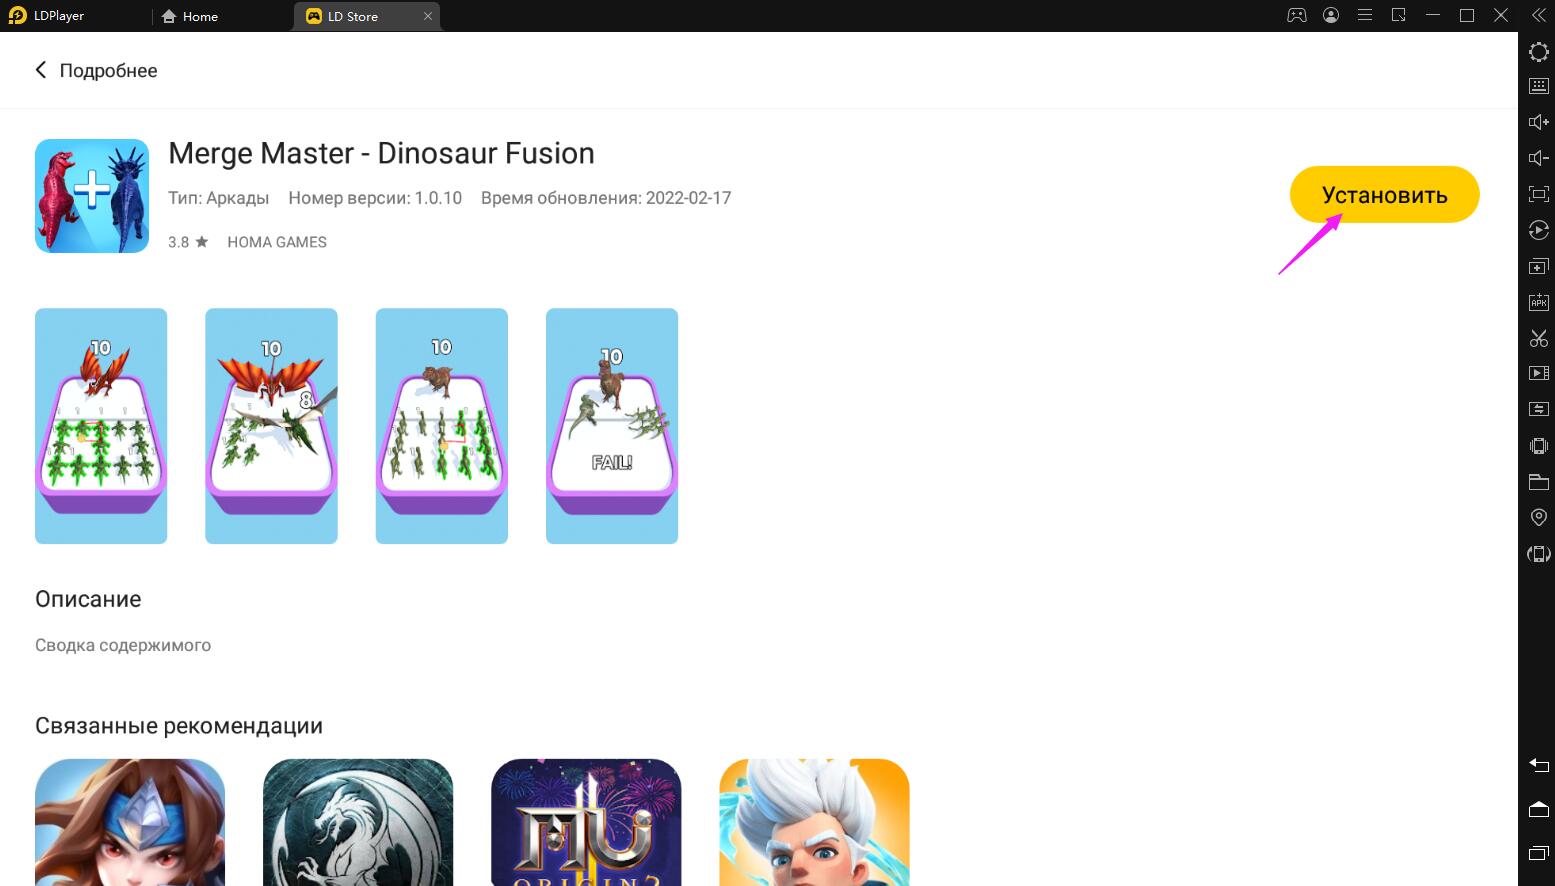 Играть в Merge Master - Dinosaur Fusion бесплатно на ПК